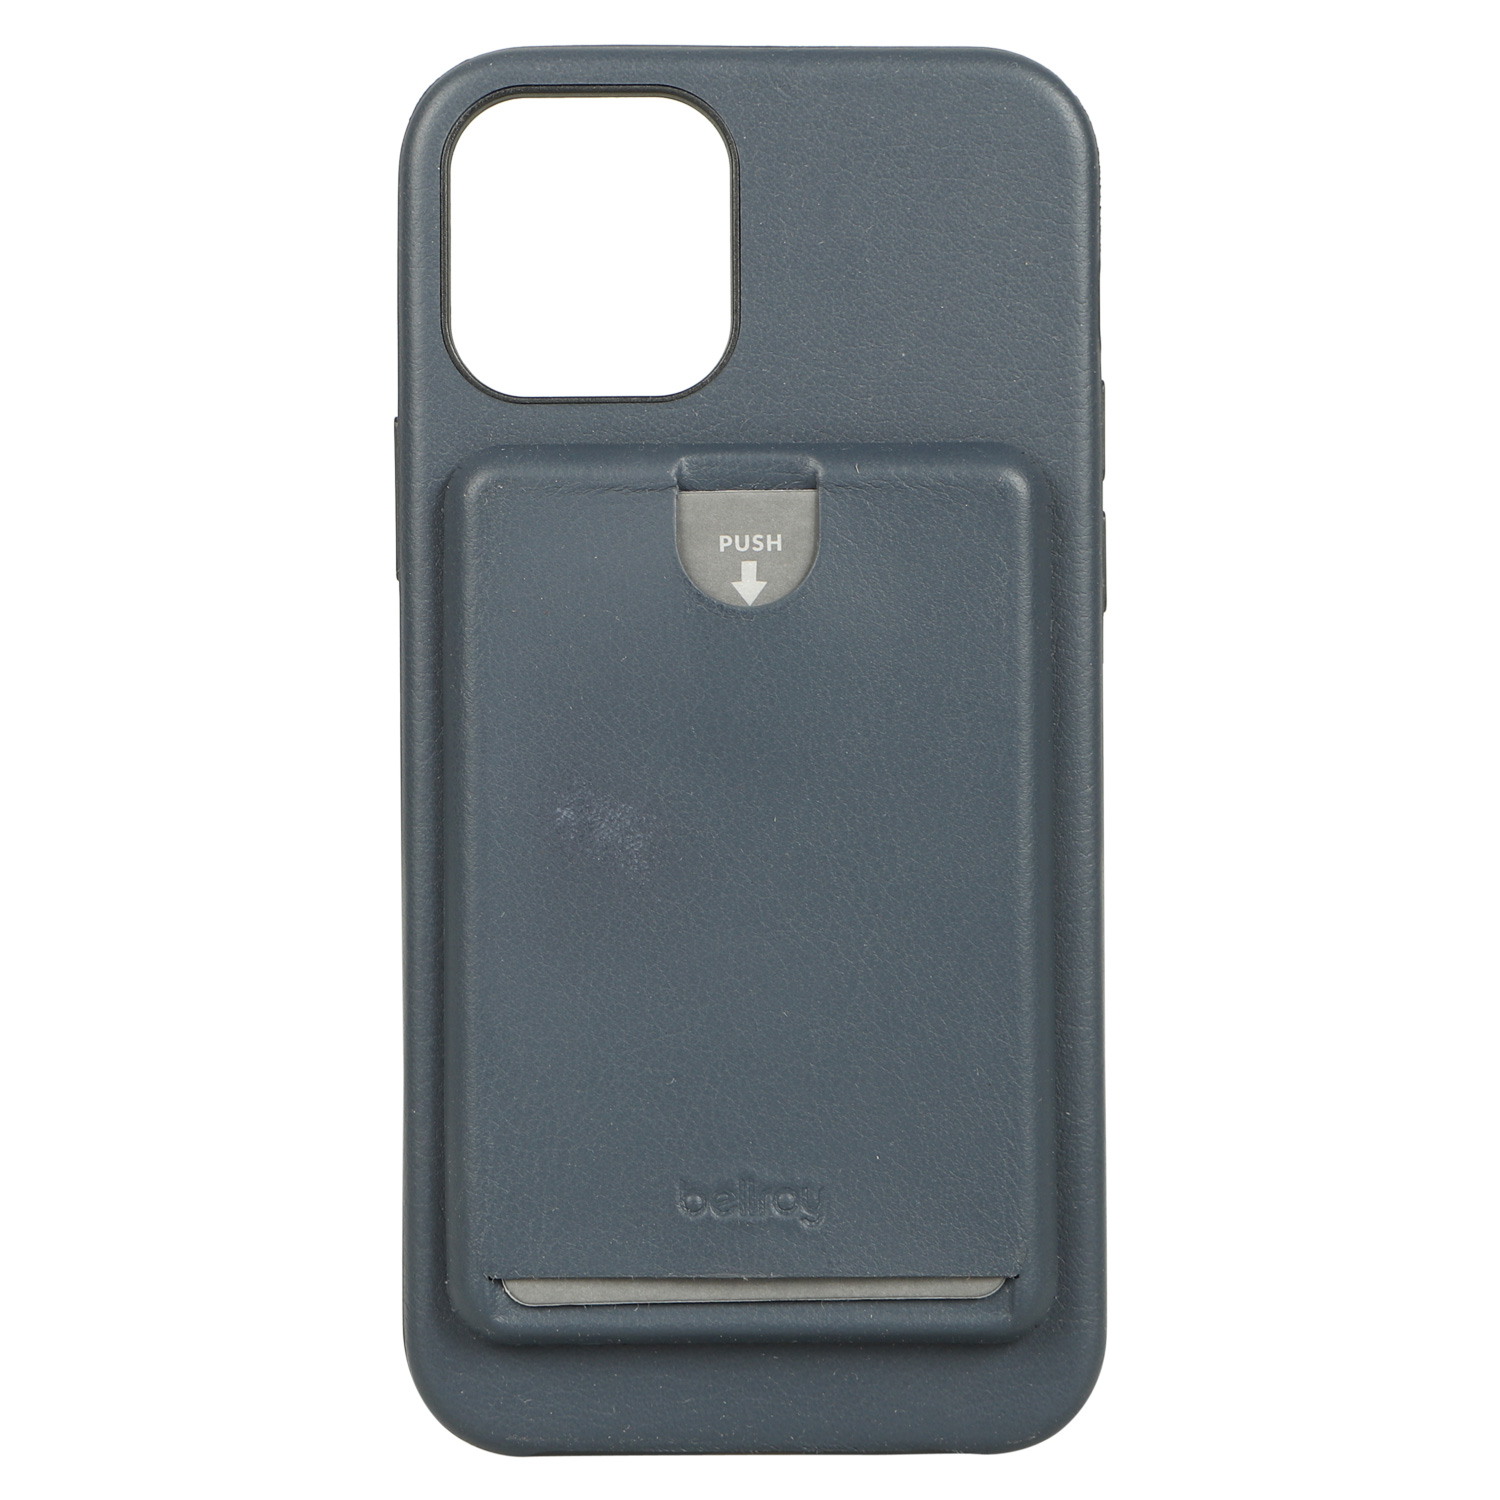 Bellroy ベルロイ iPhone12 12 Pro ケース スマホ 携帯 アイフォン メンズ レディース 背面ポケット PHONE CASE  ブラック グレー ブラウン 黒 PMXA